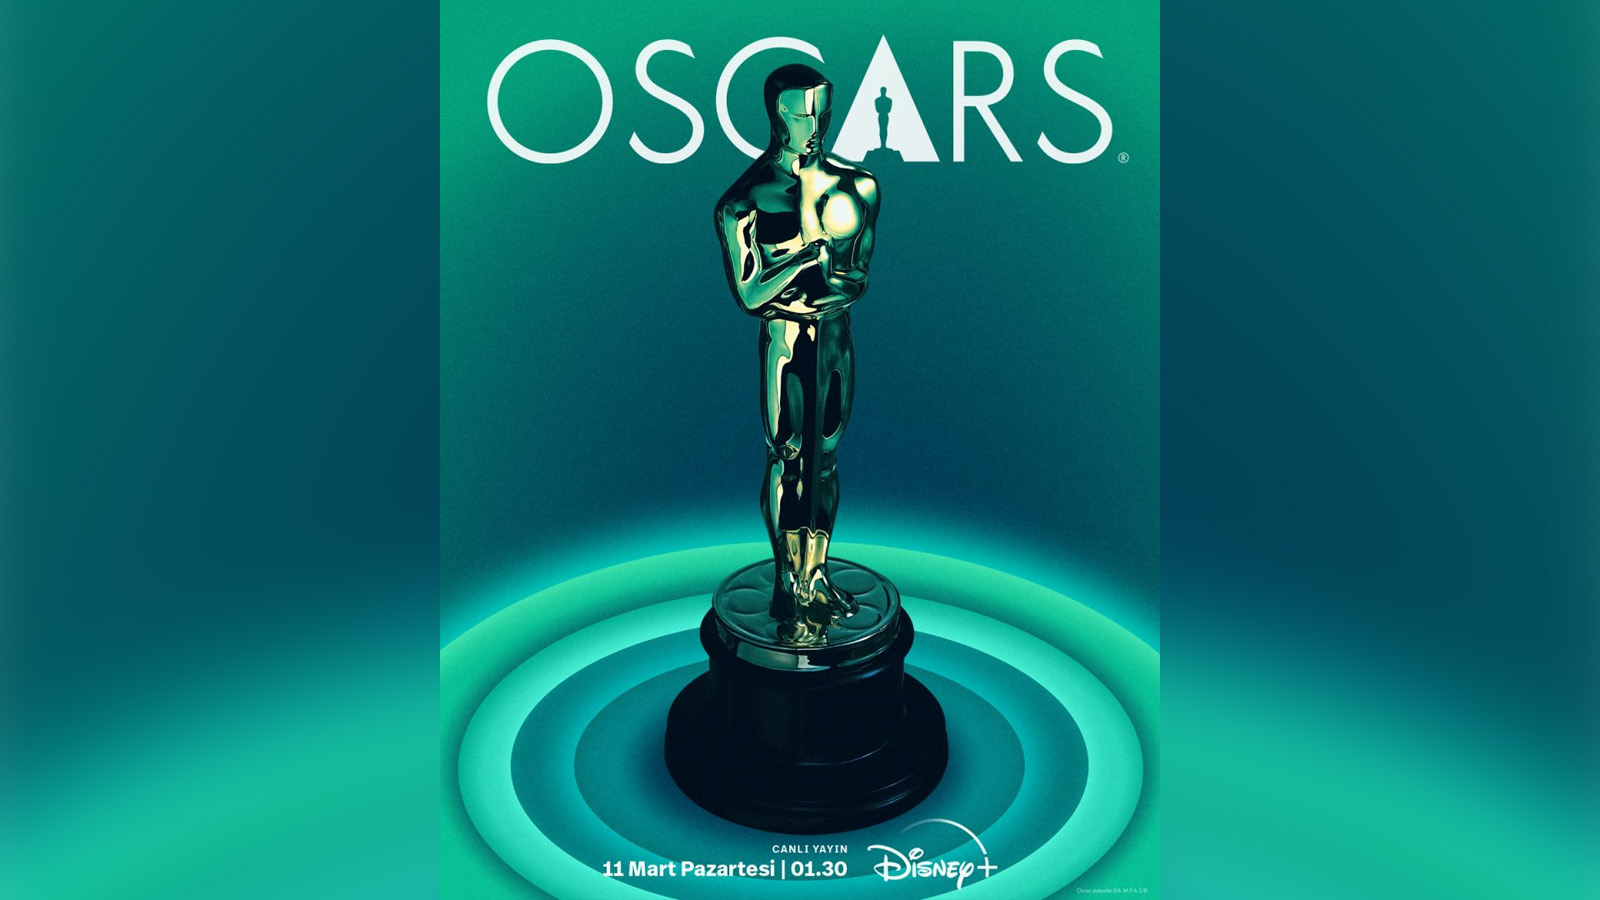 Disney+ üzerinden canlı yayınlanacak 96. Oscar Ödül Töreni heyecanla bekleniyor